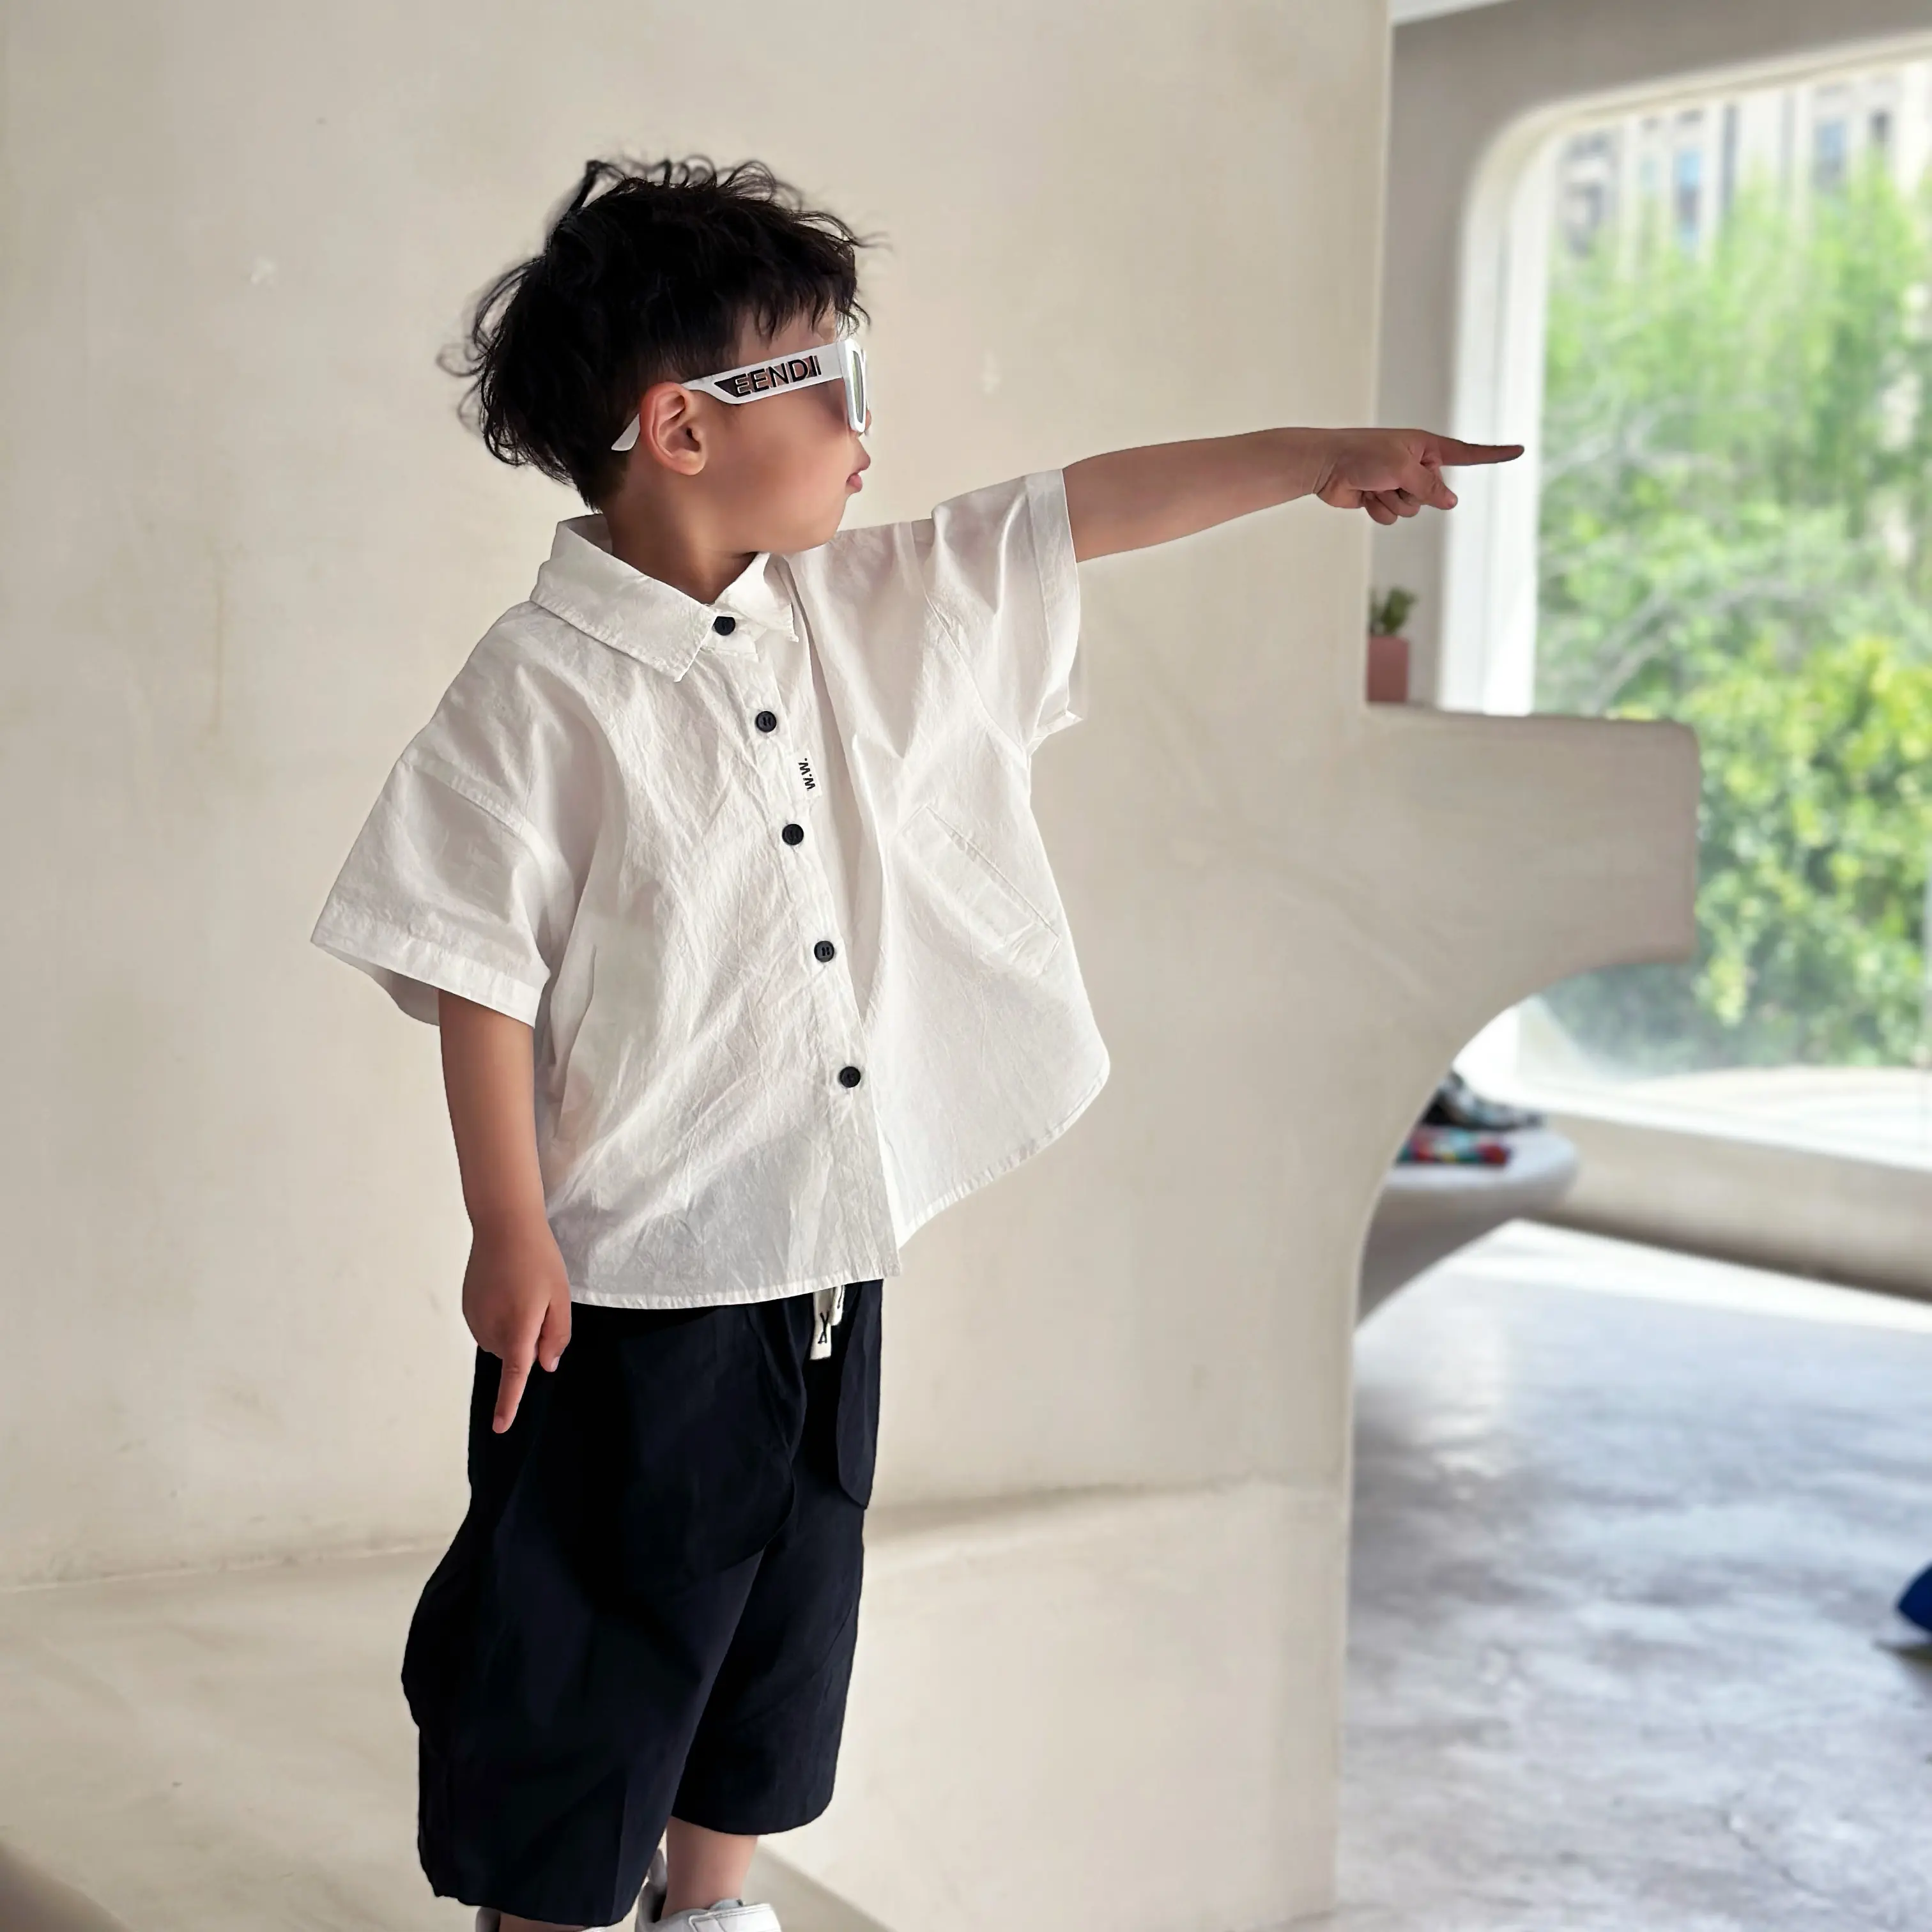 1-6 anni all'ingrosso Unisex bambino vestiti ragazzi t-Shirt camicia bianca per 80-140cm bambini giapponese tono del bambino Tshirt